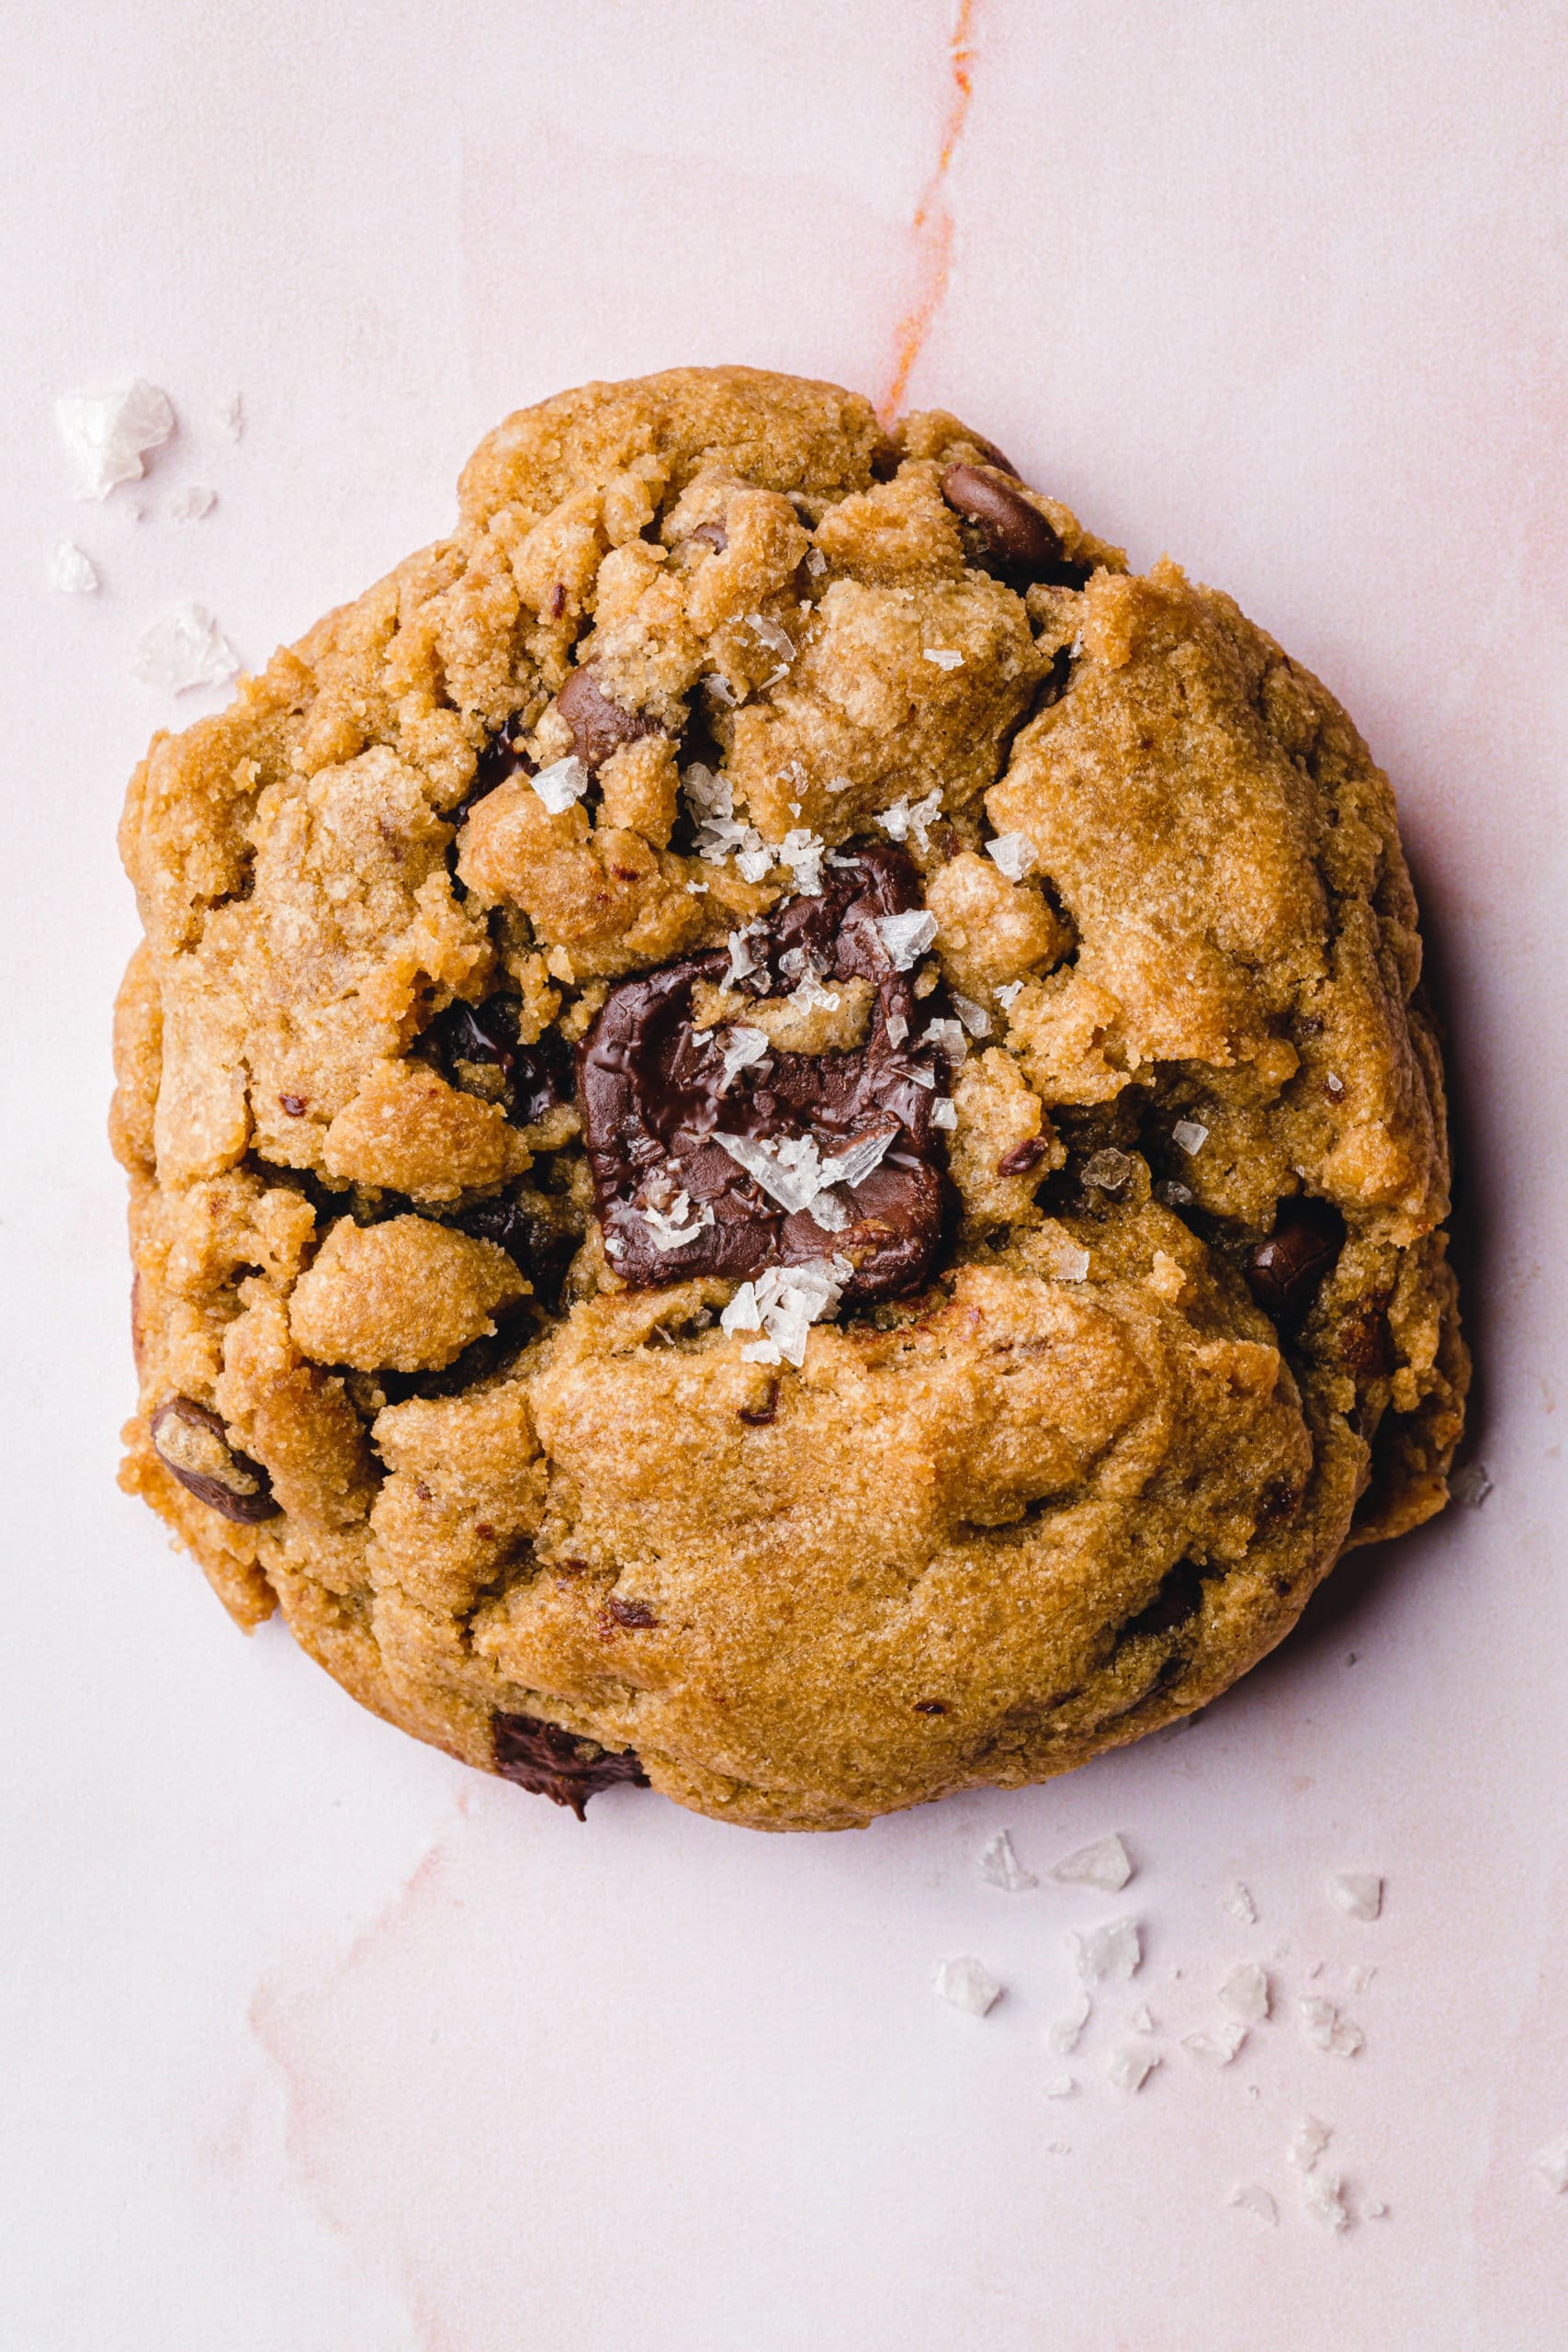 Vegane Chocolate Chip Cookies · Eat this! Foodblog für gesunde vegane ...